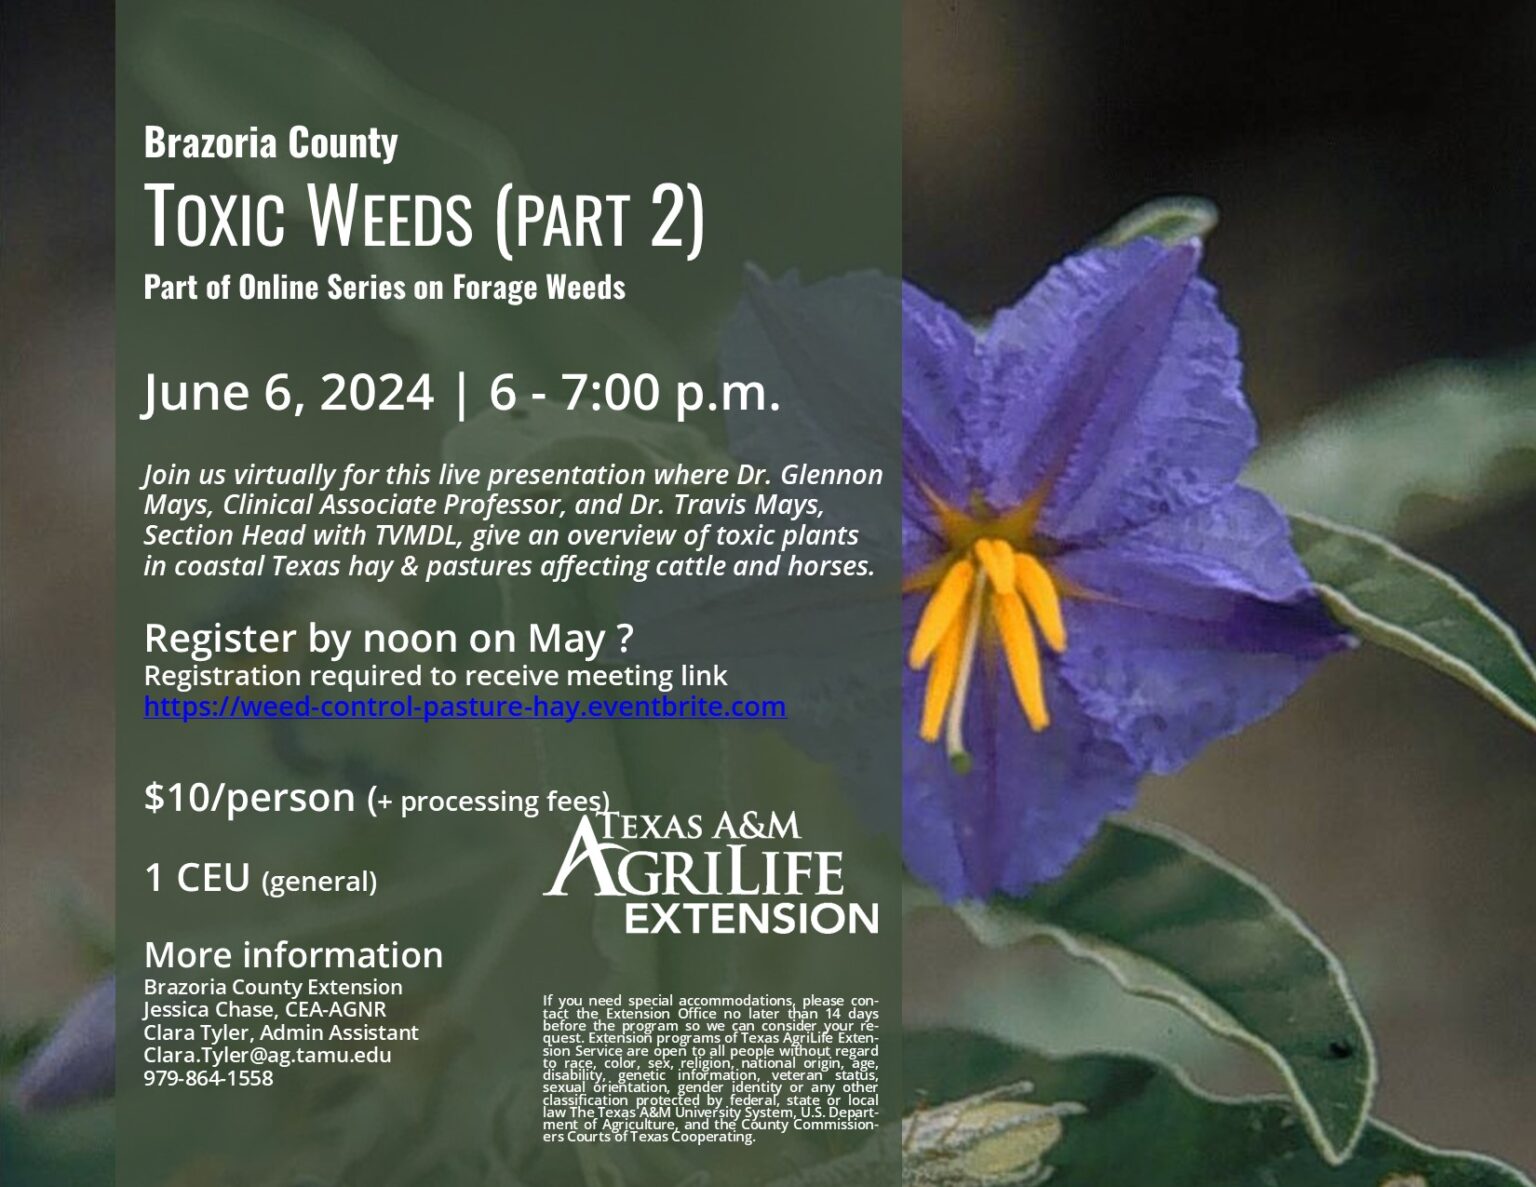 FLYER-Toxic Weeds Part 2 JUNE 6, 2024